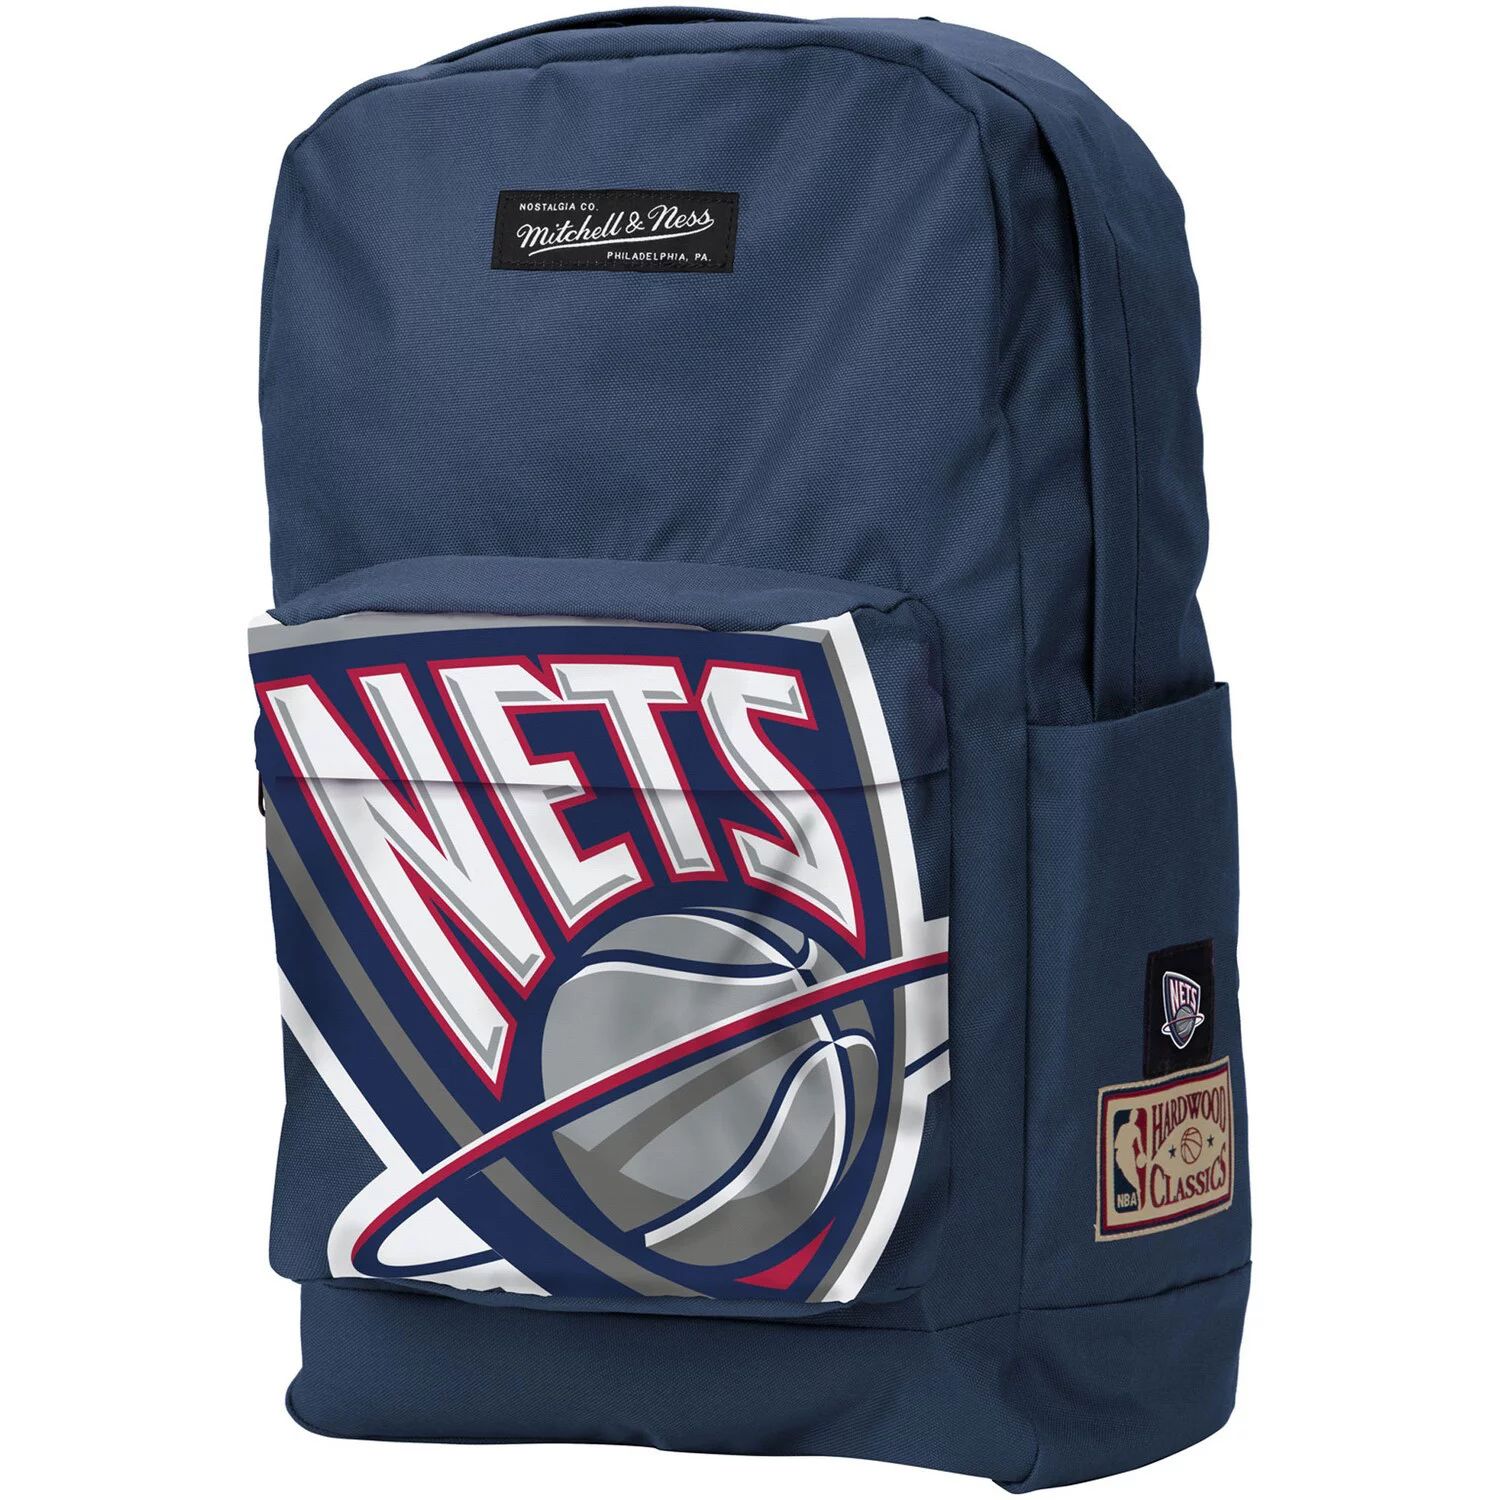 Классический рюкзак Mitchell & Ness New Jersey Nets из твердой древесины